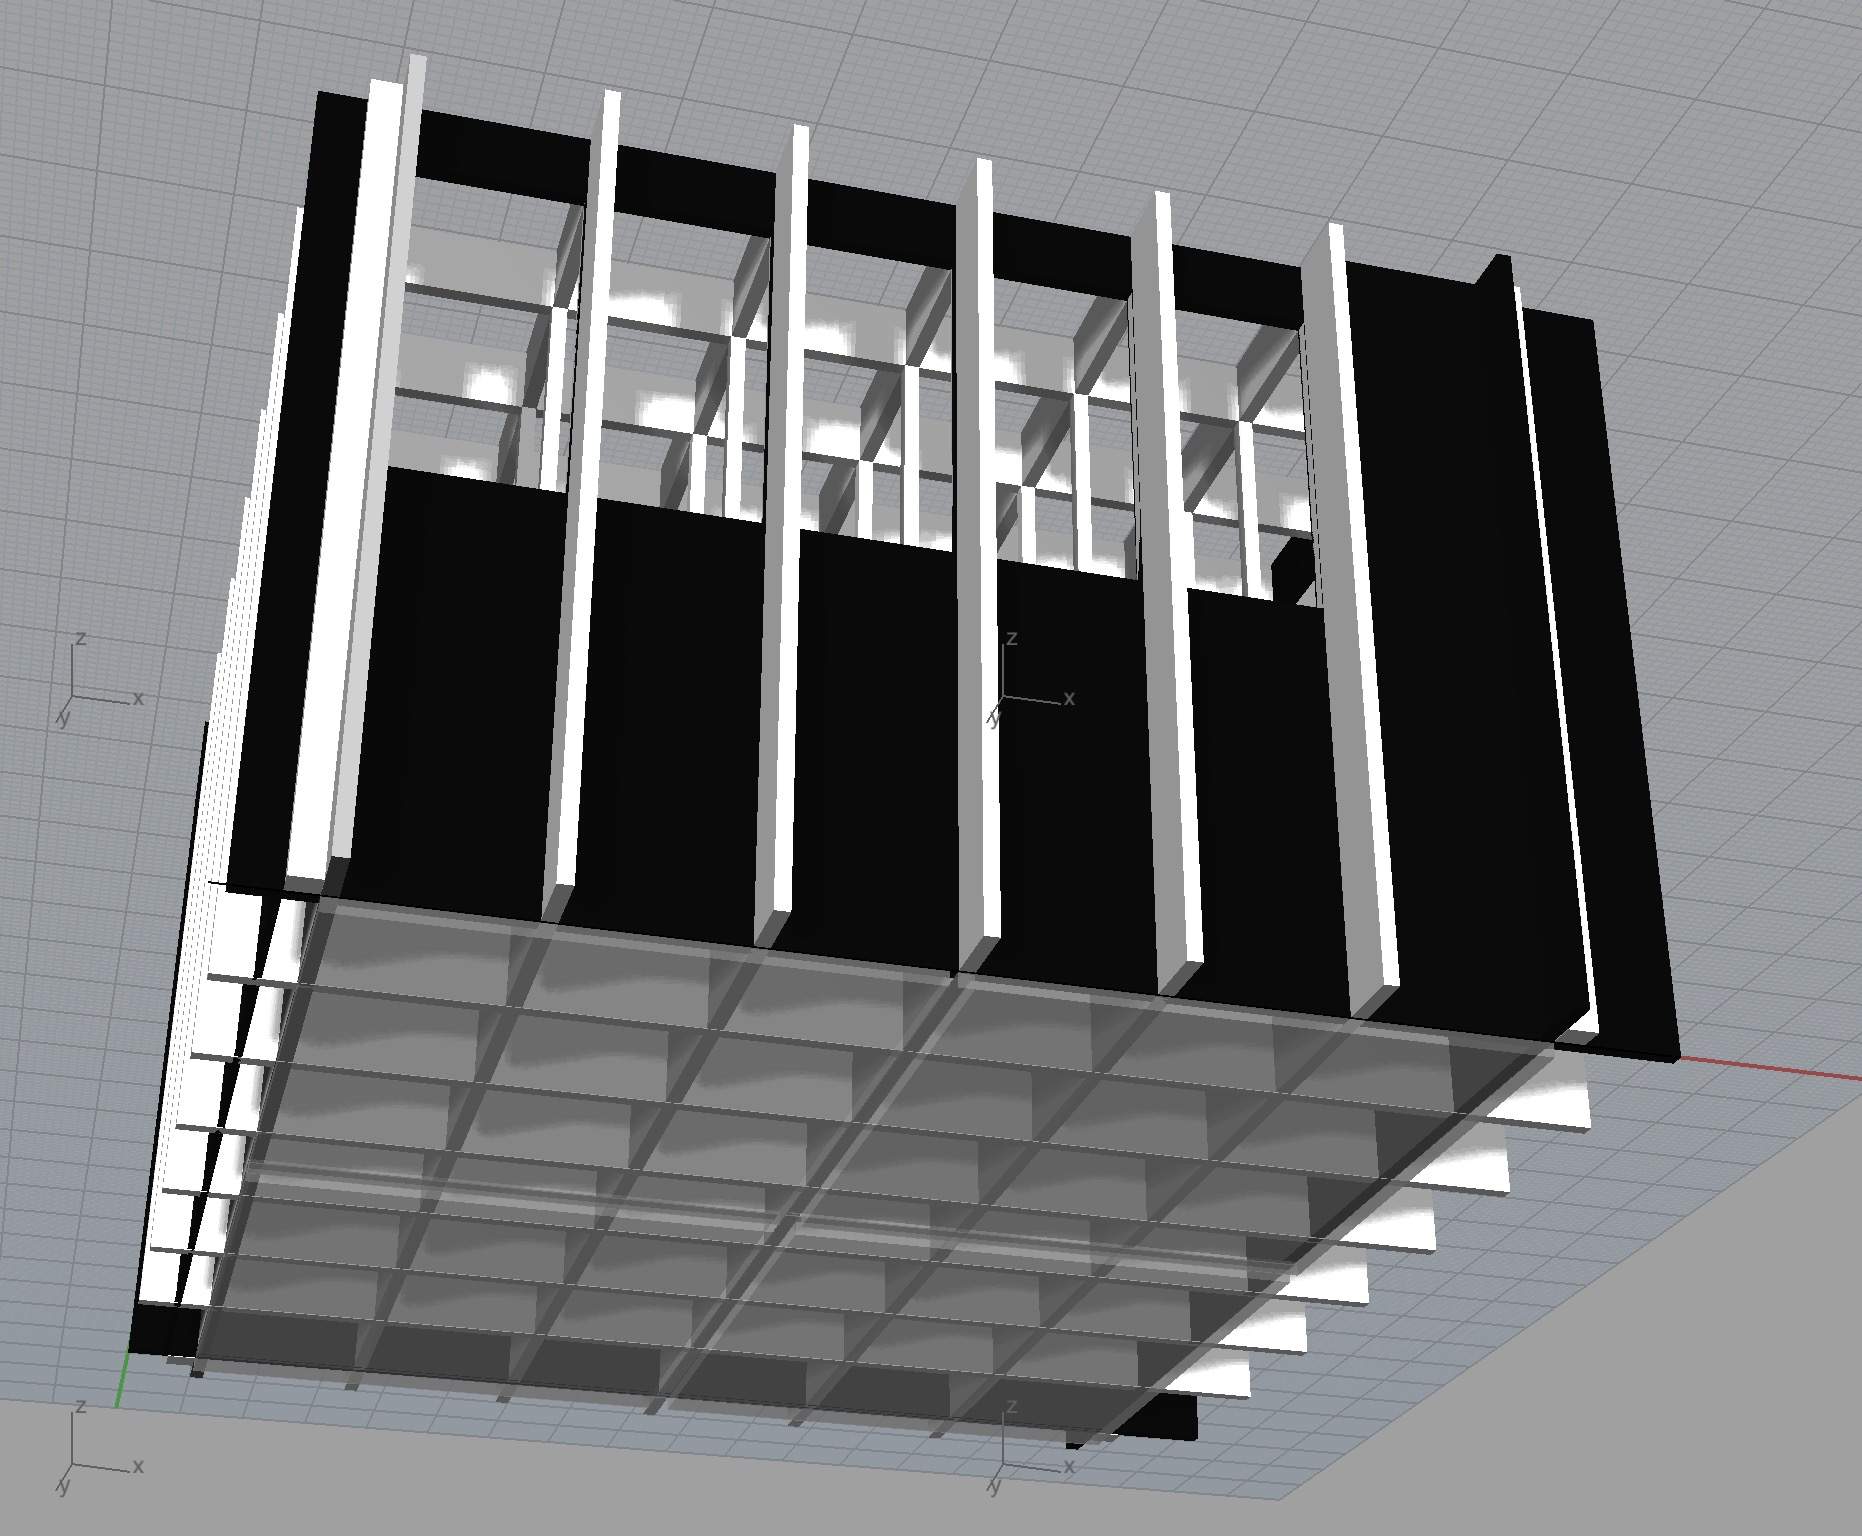 3D rendering of box grid